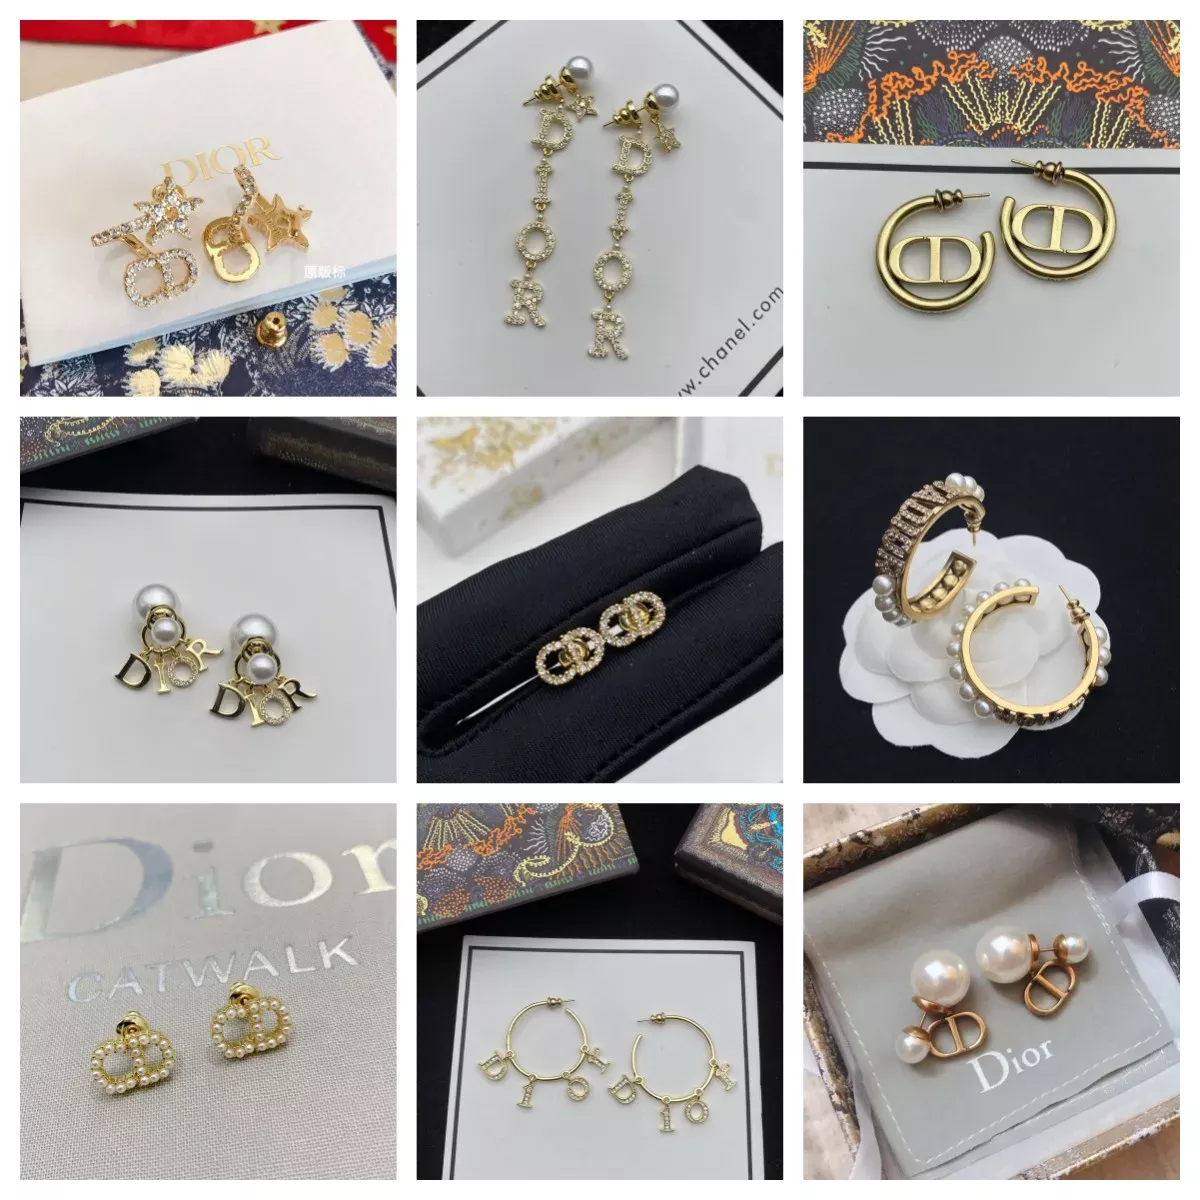 Chanel CC earrings #dhgate # #aliexpress #LTKsalealert